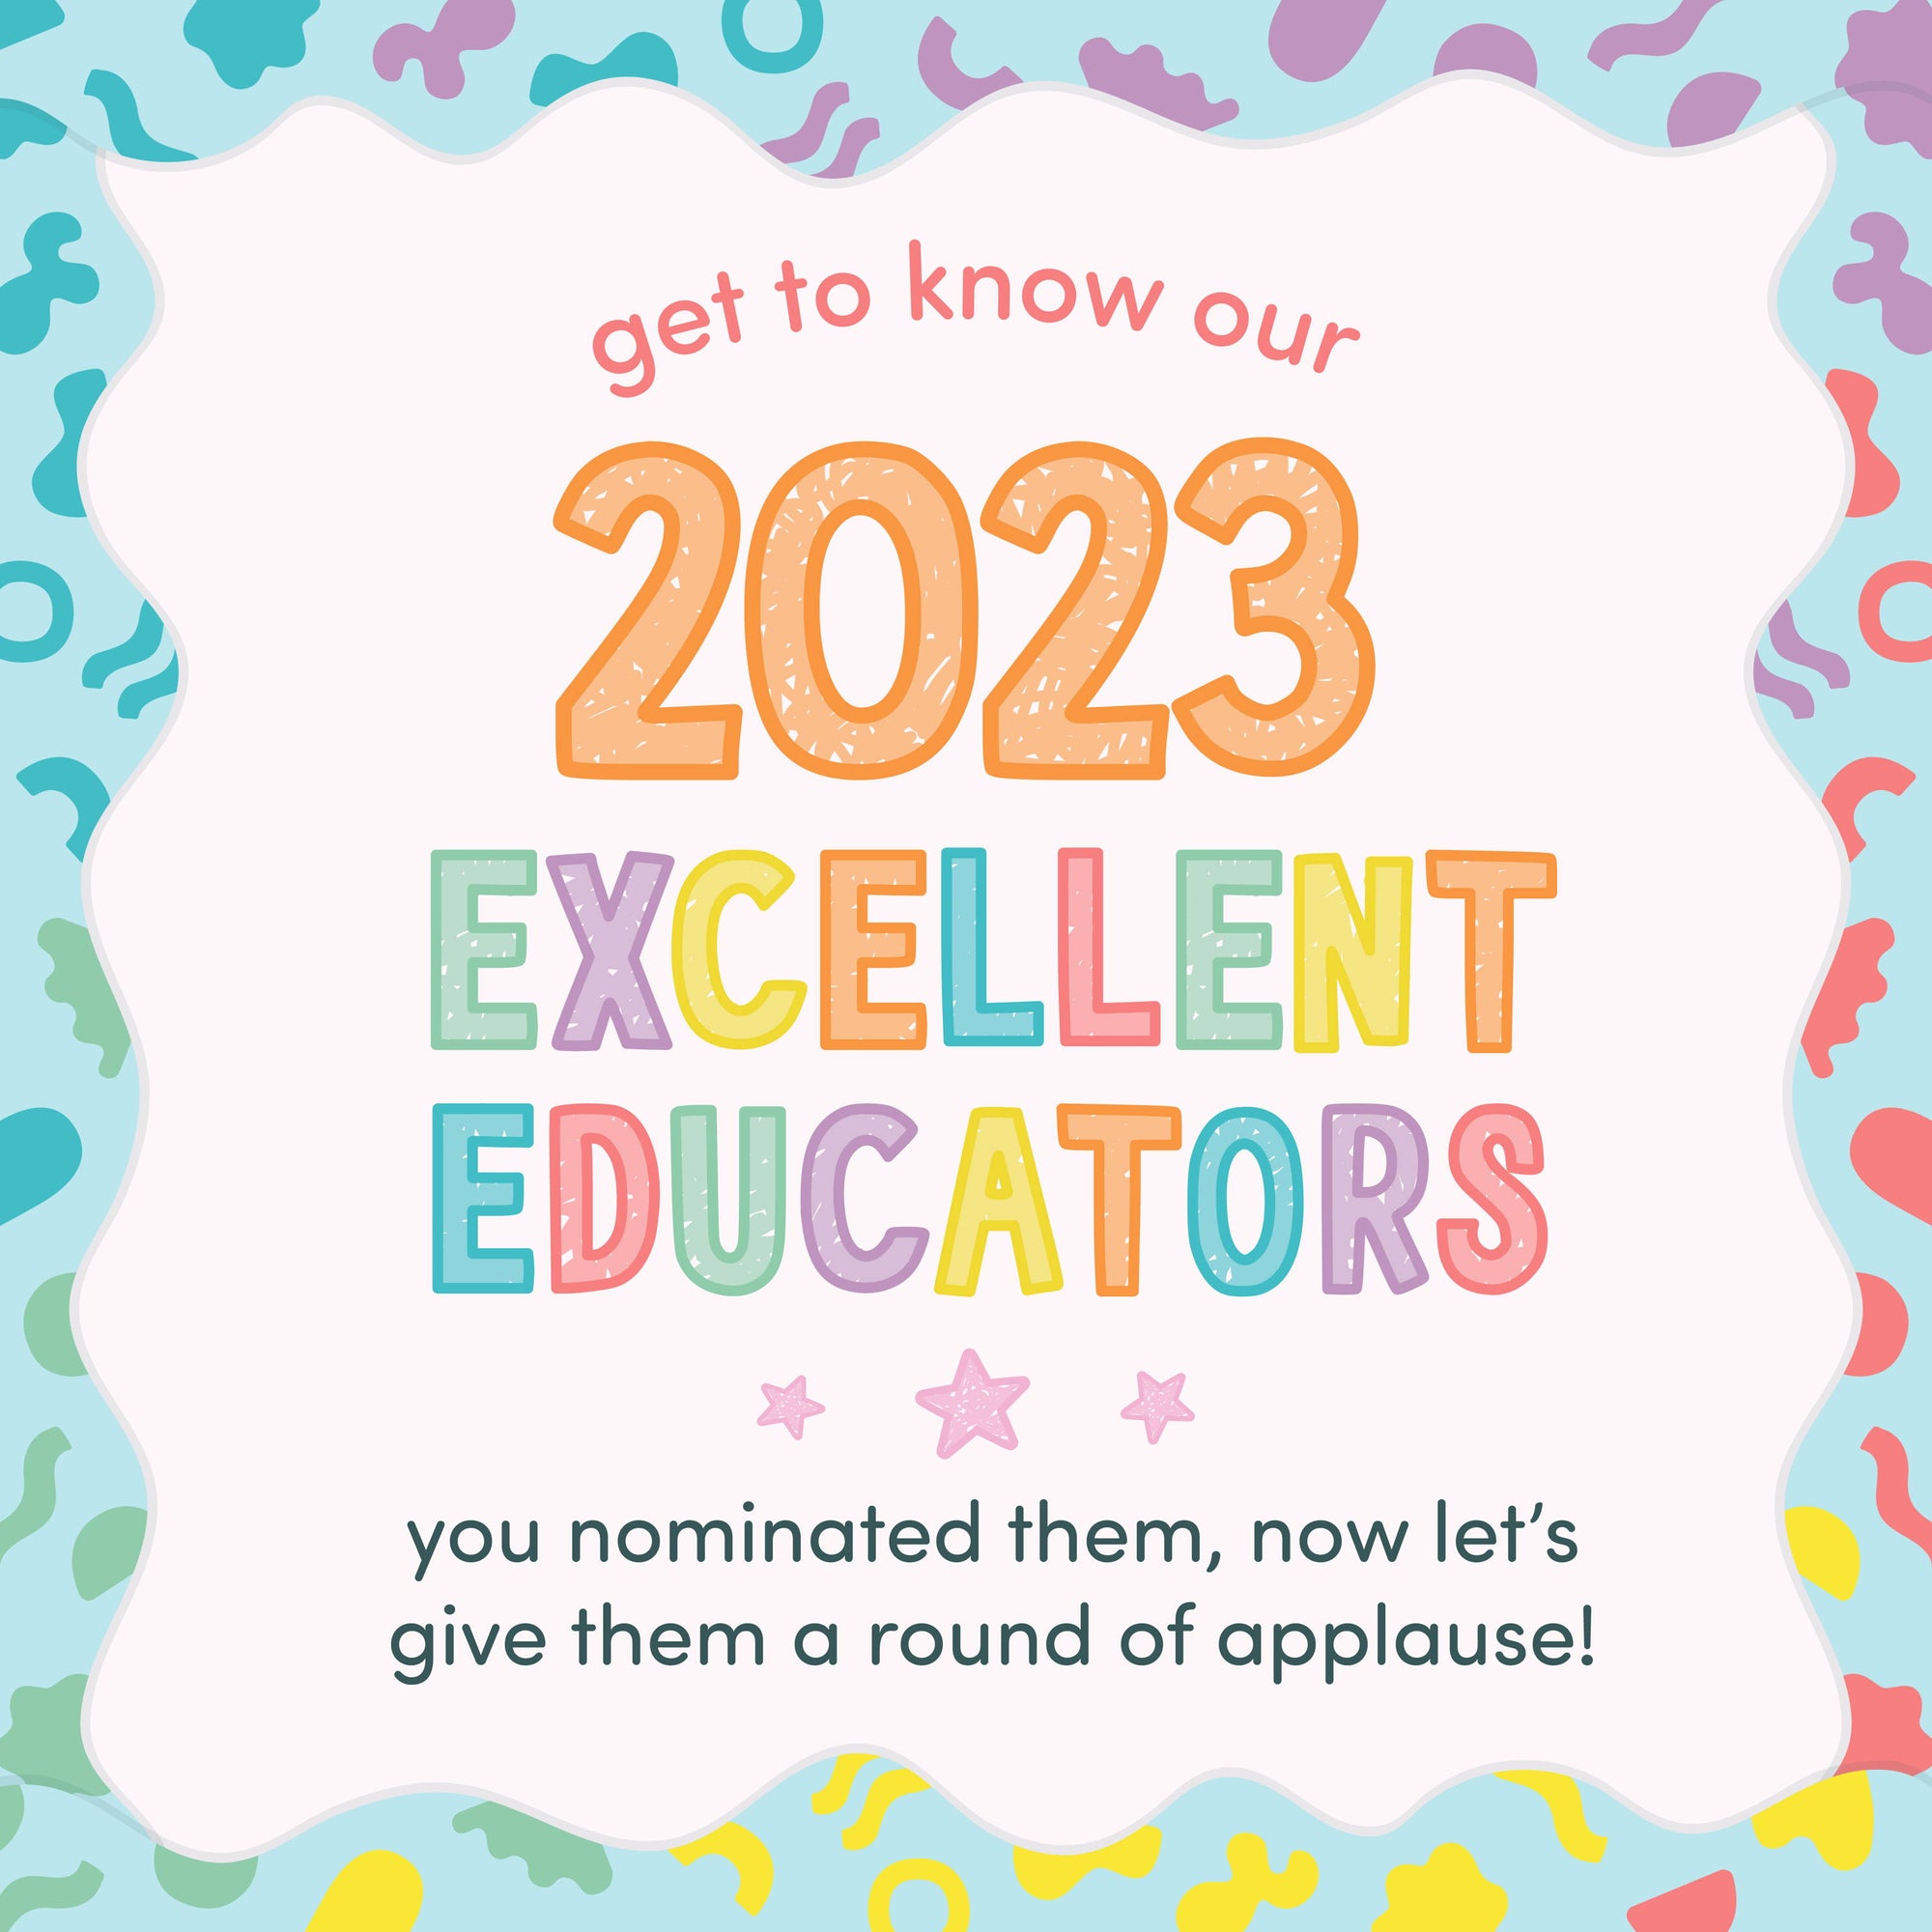 Meet our 2023 Excellent Educators